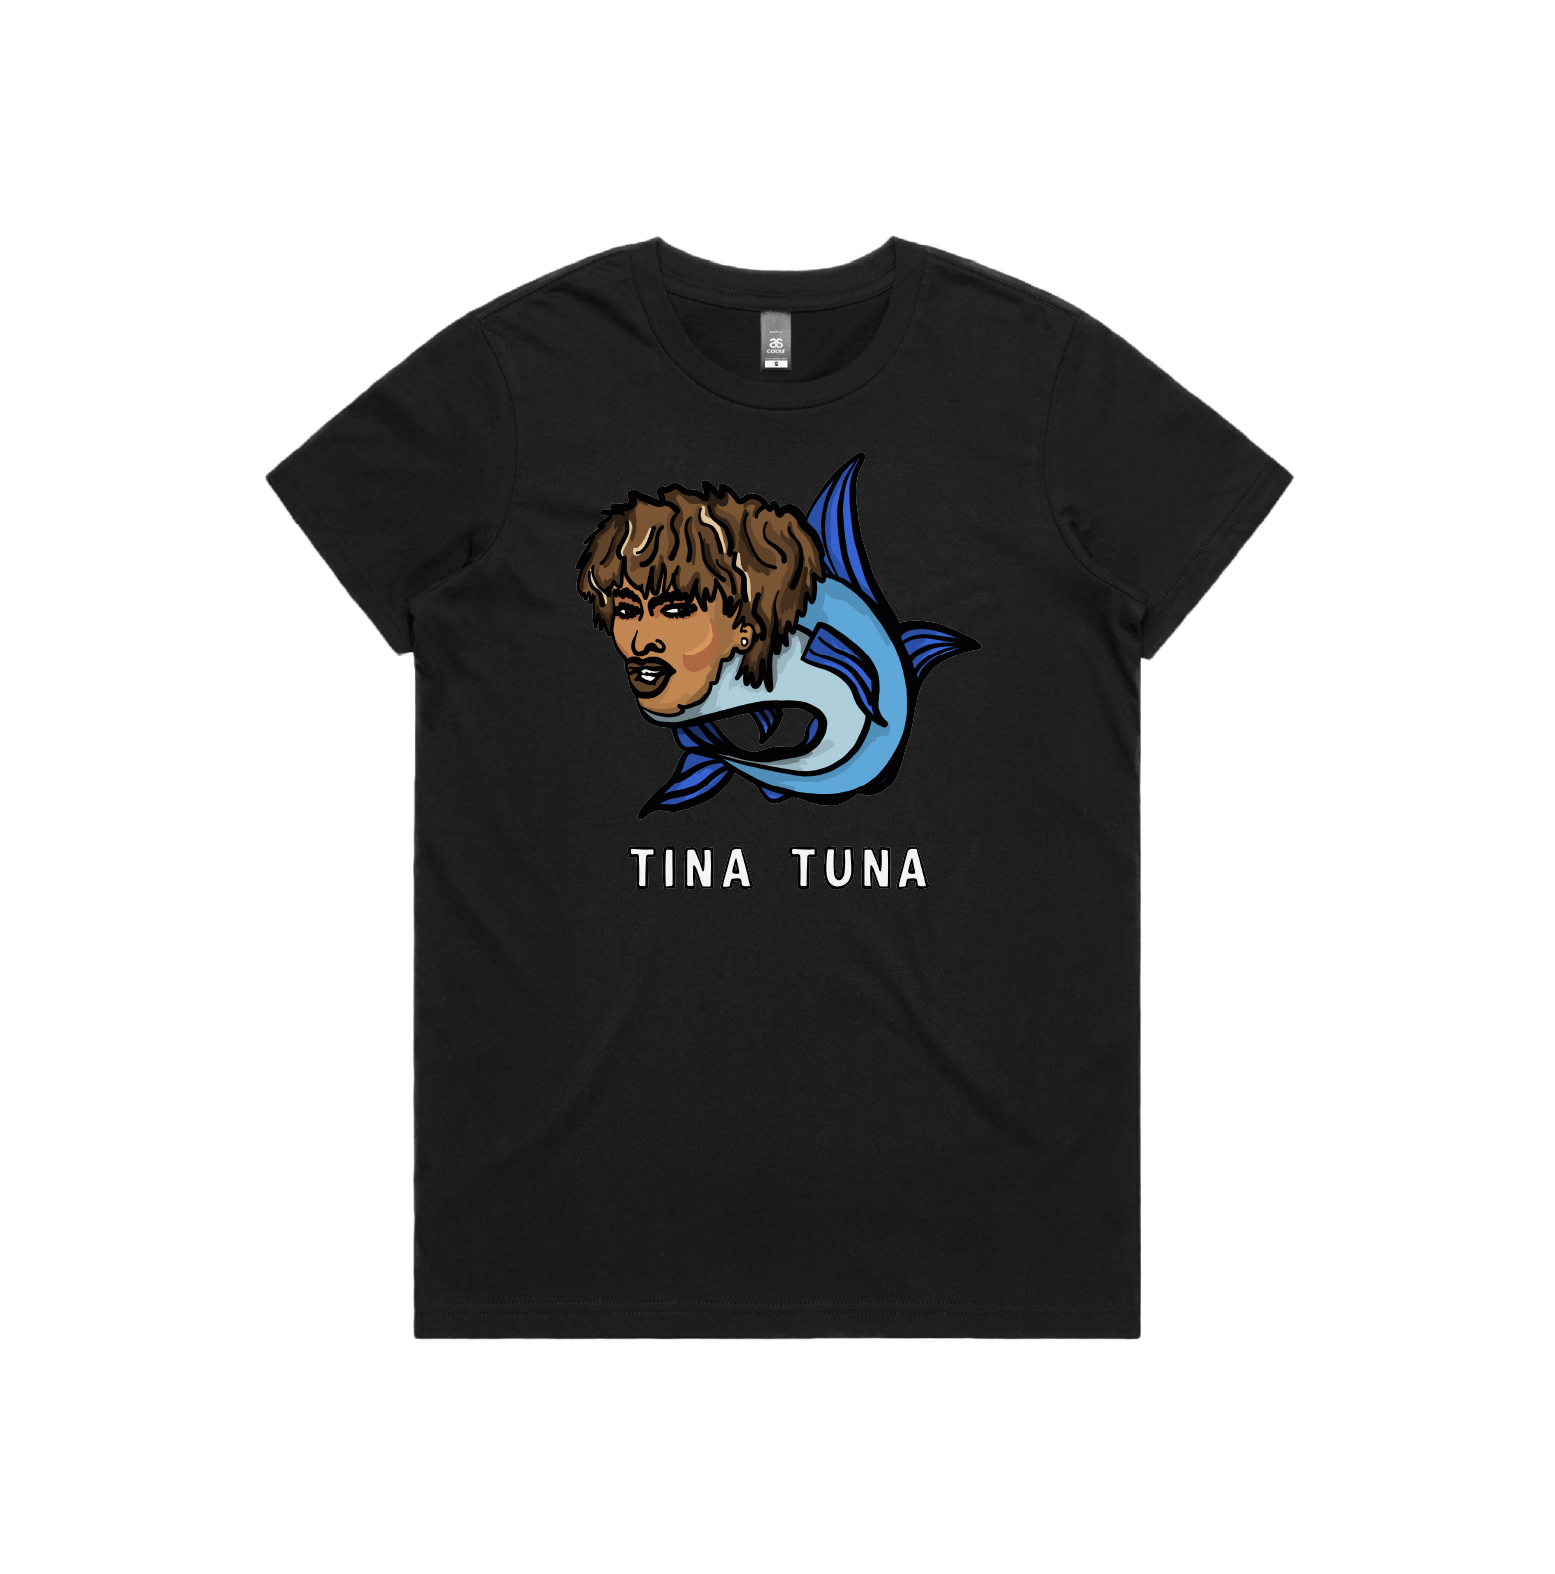 XS / Black / Large Front Design Tina Tuna 🐟 - Women's T Shirt